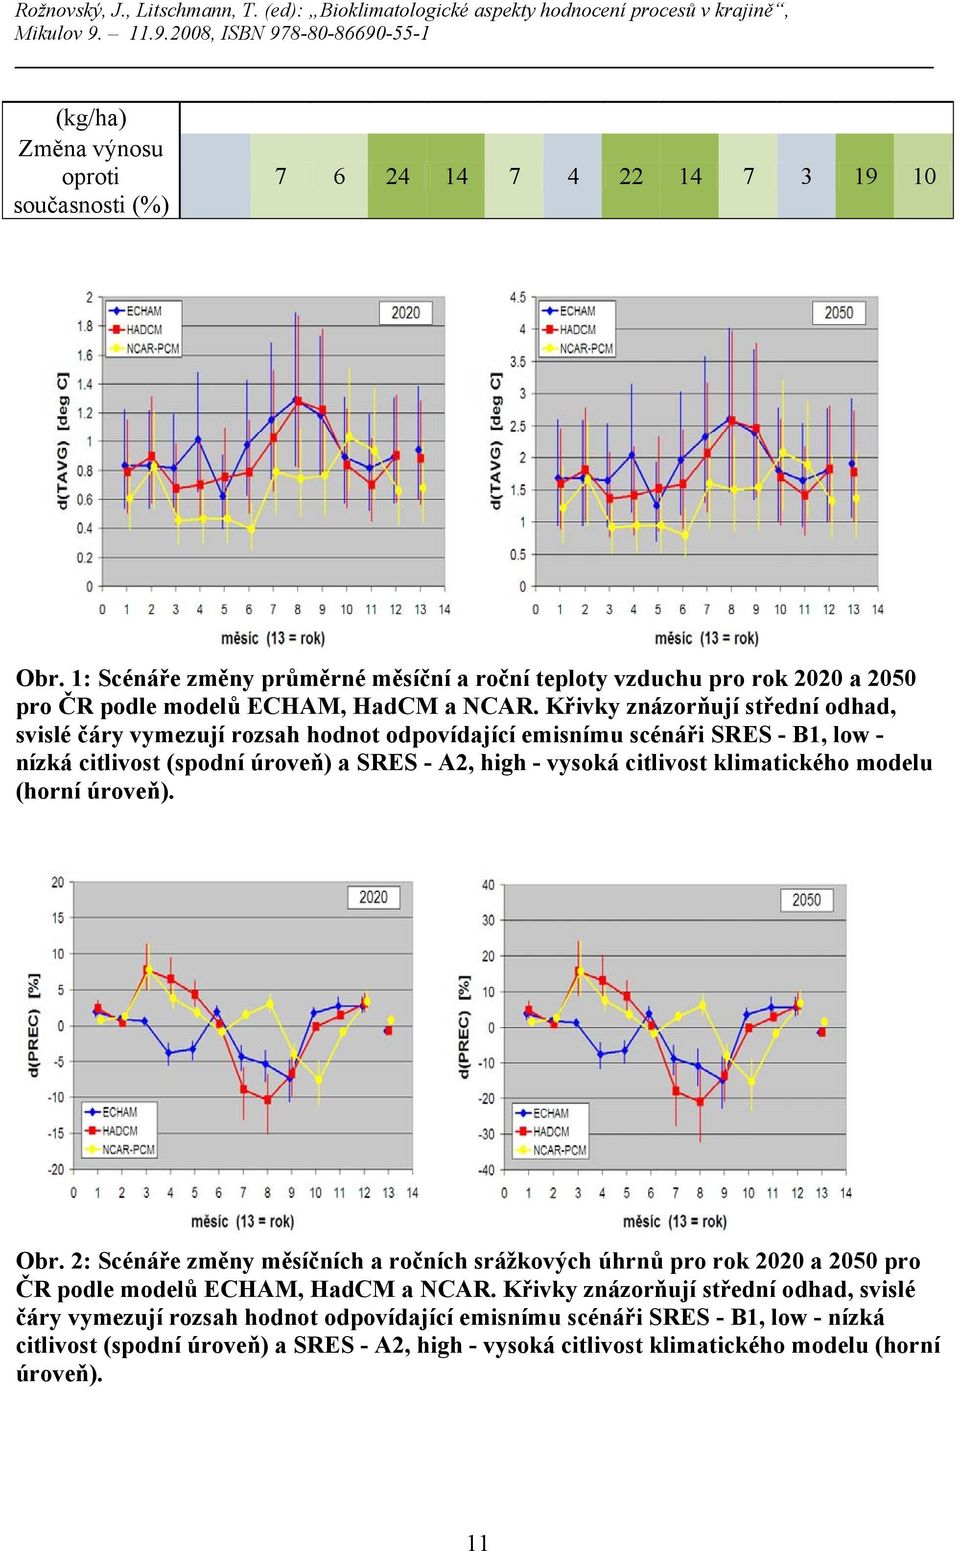 Křivky znázorňují střední odhad, svislé čáry vymezují rozsah hodnot odpovídající emisnímu scénáři SRES - B1, low - nízká citlivost (spodní úroveň) a SRES - A2, high - vysoká citlivost